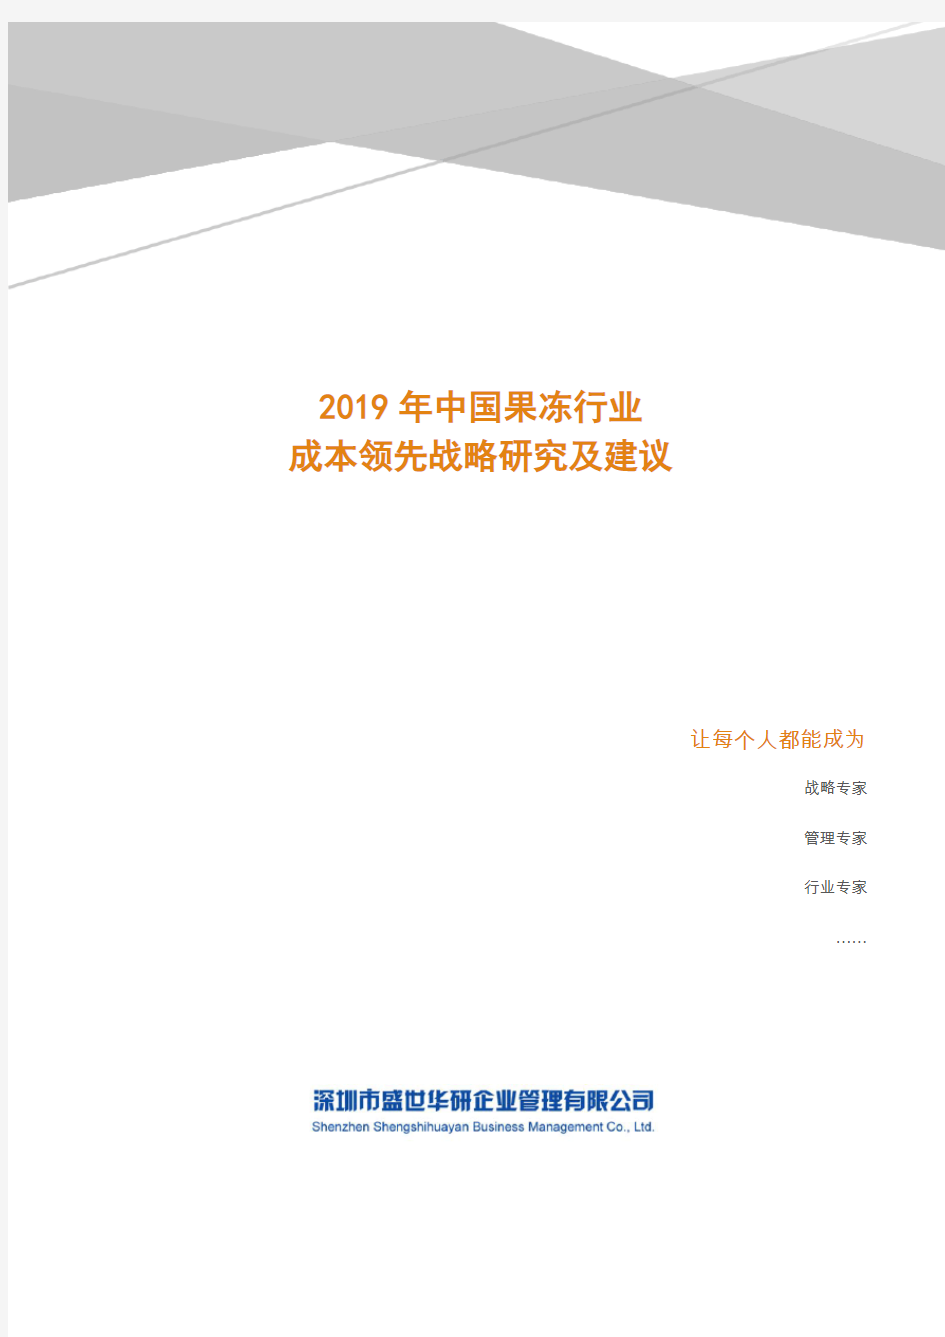 2019年中国果冻行业成本领先战略研究及建议